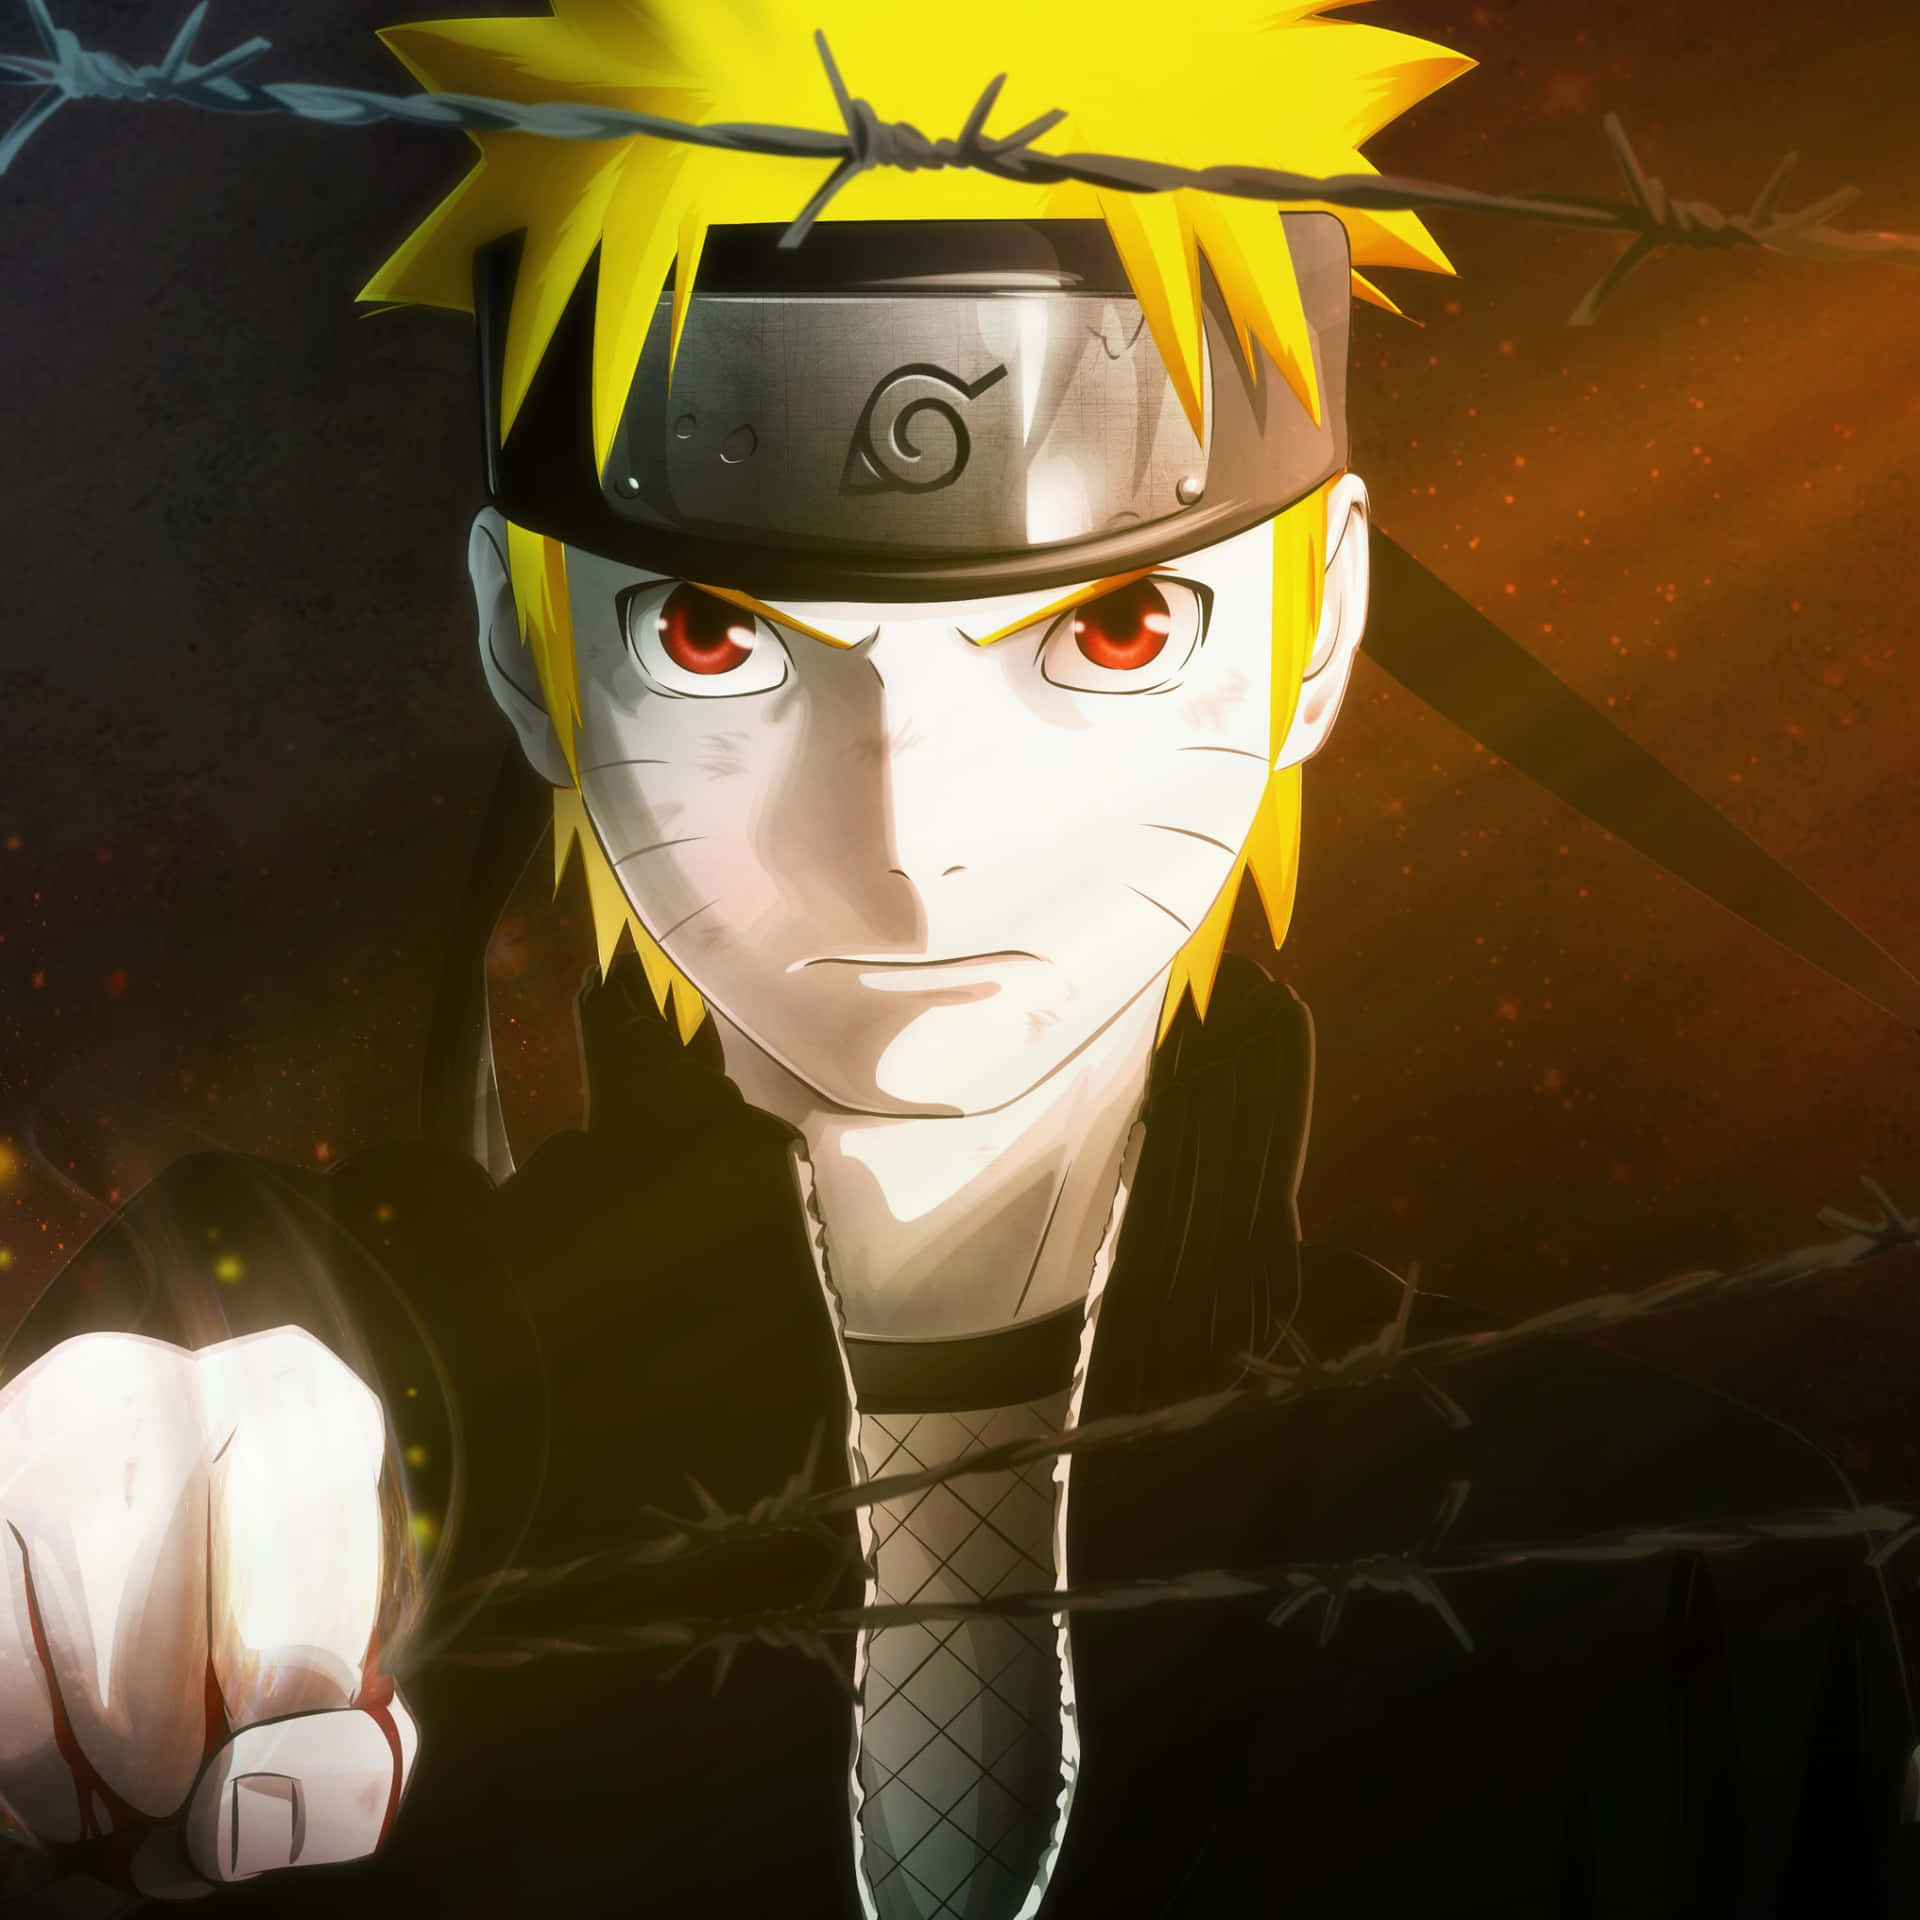 Følg Naruto's føring og nå dine drømme Wallpaper